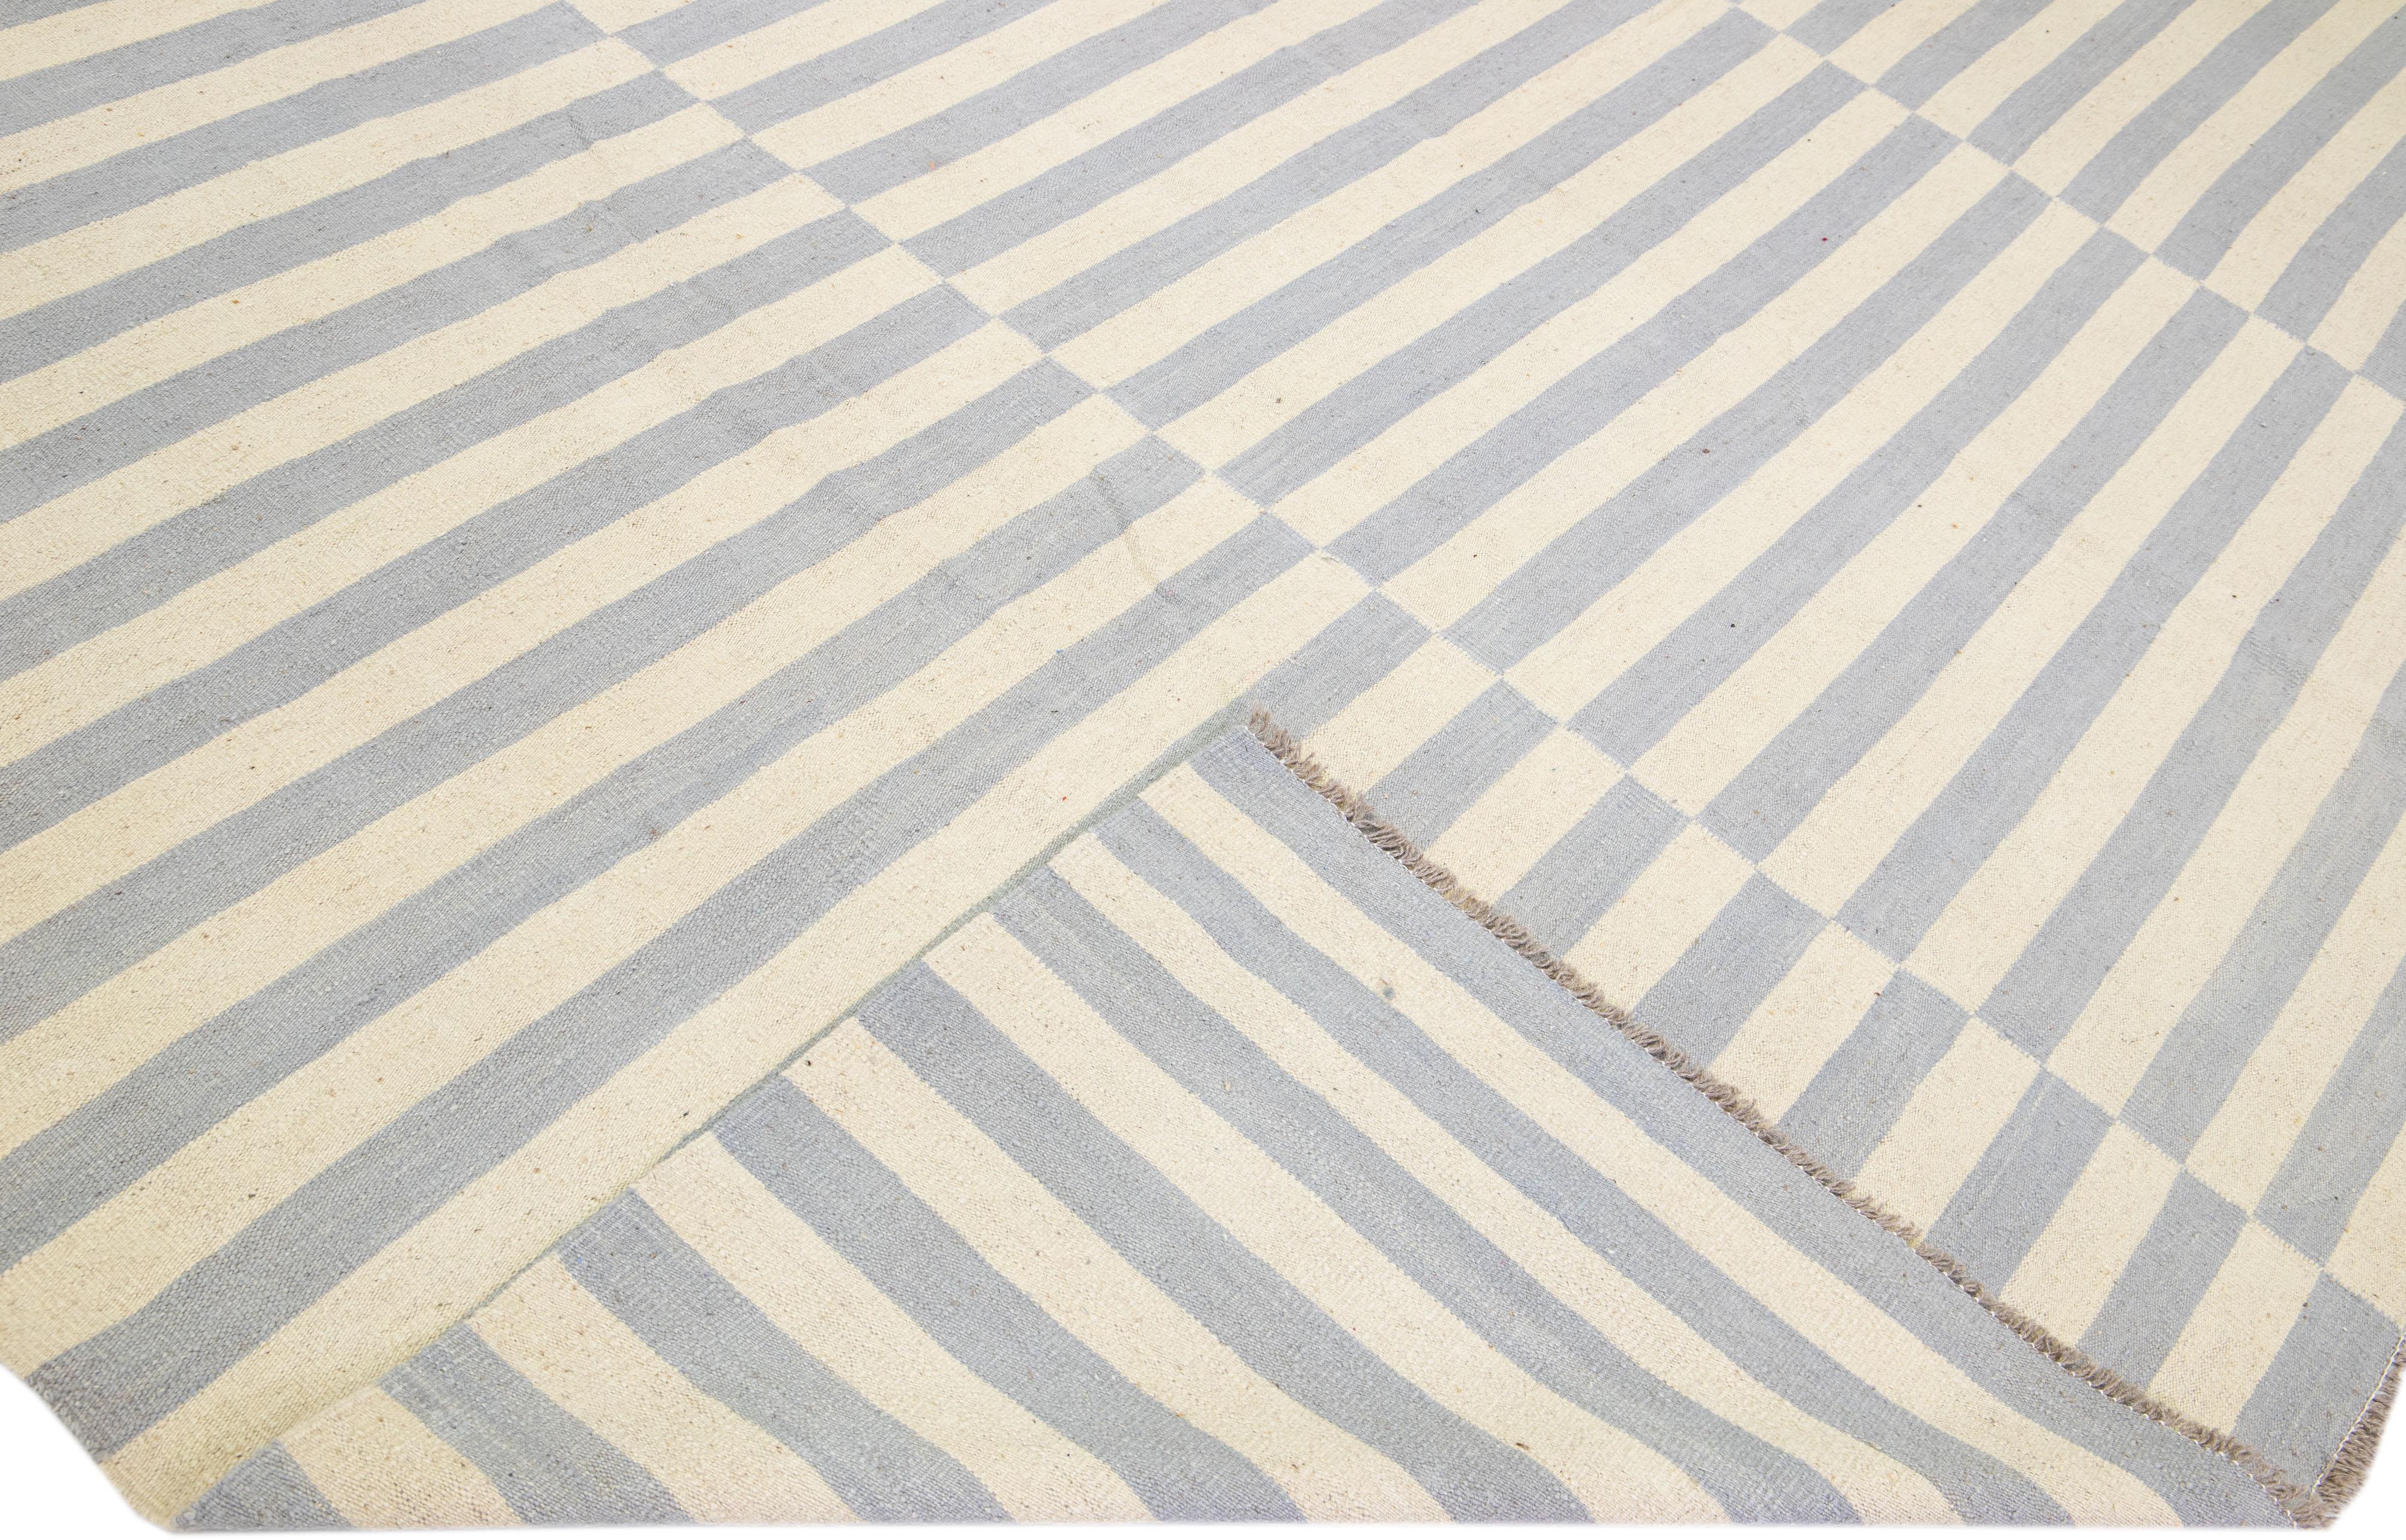 Magnifique tapis moderne en laine Kilim tissé à la main avec un champ de couleur beige. Ce tapis Rug & Kilim présente des accents gris dans un magnifique motif de rayures sur tout le pourtour.

Ce tapis mesure : 12'5